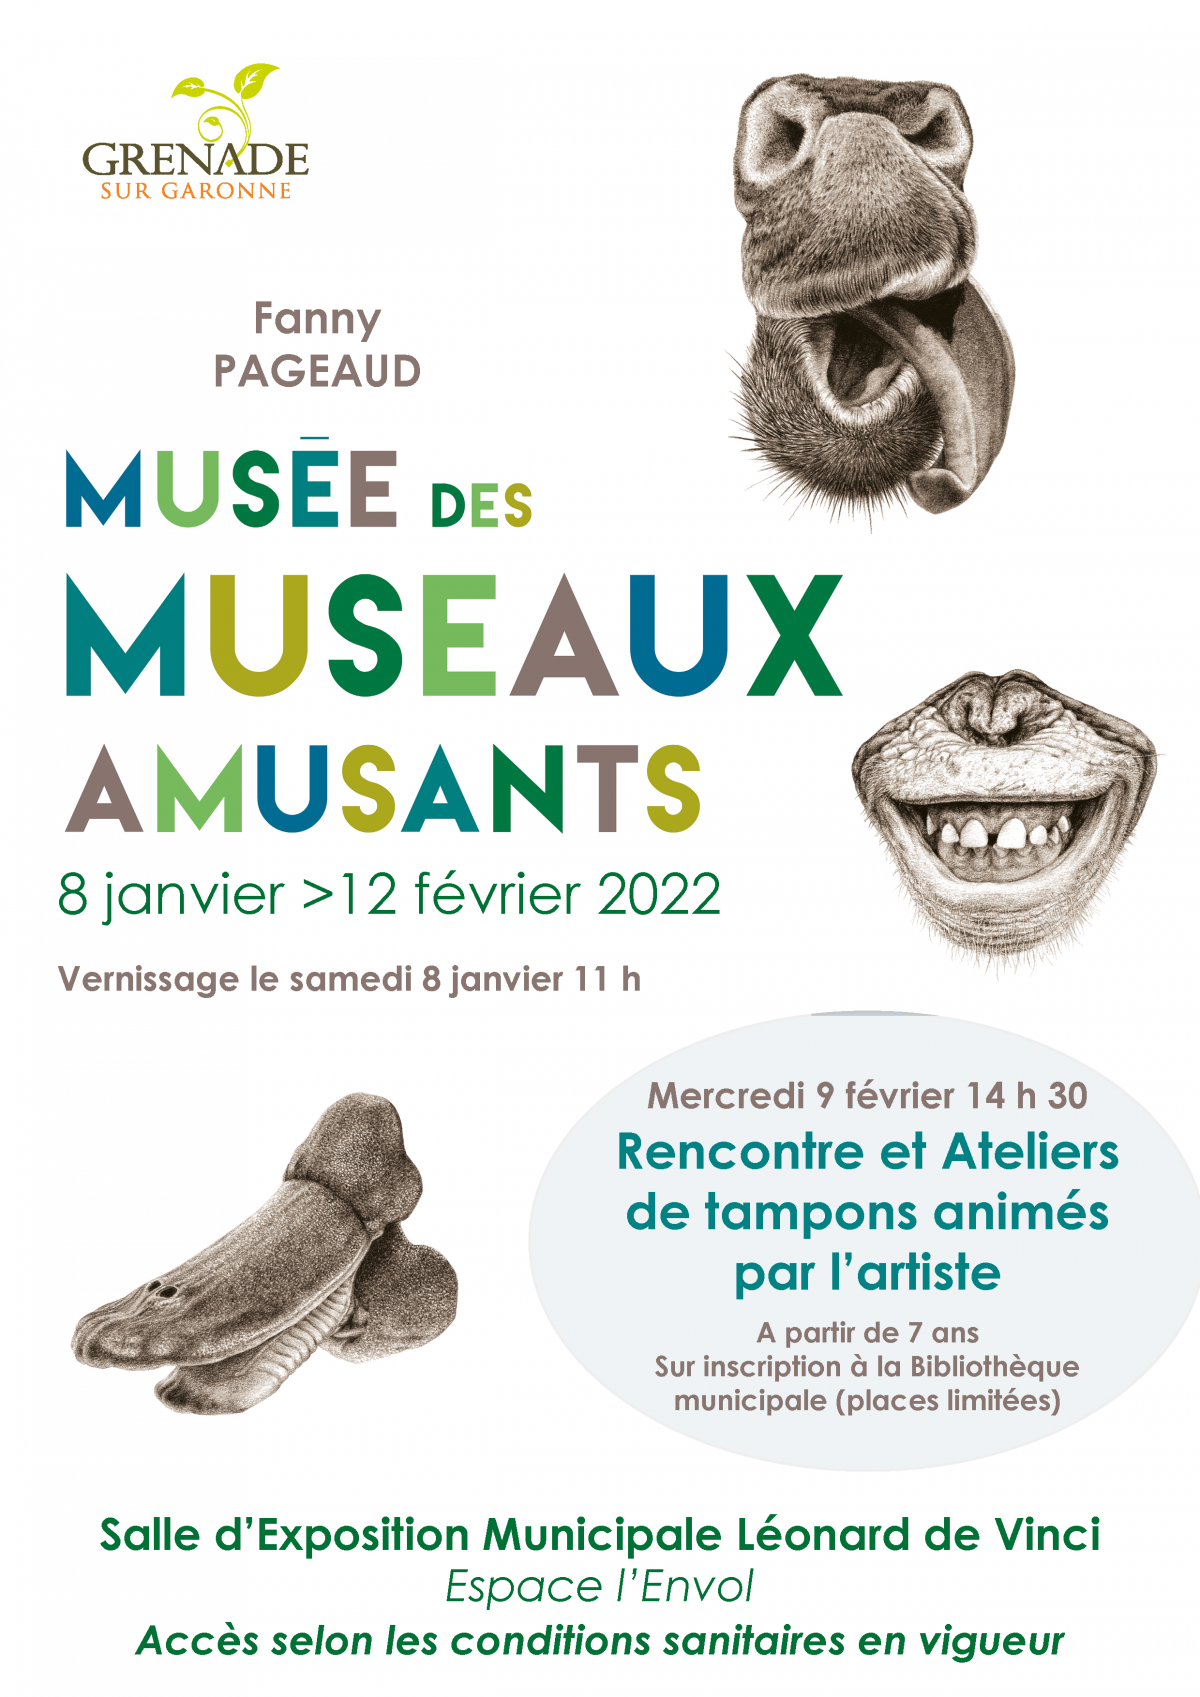 Exposition Le Musée des Museaux Amusants